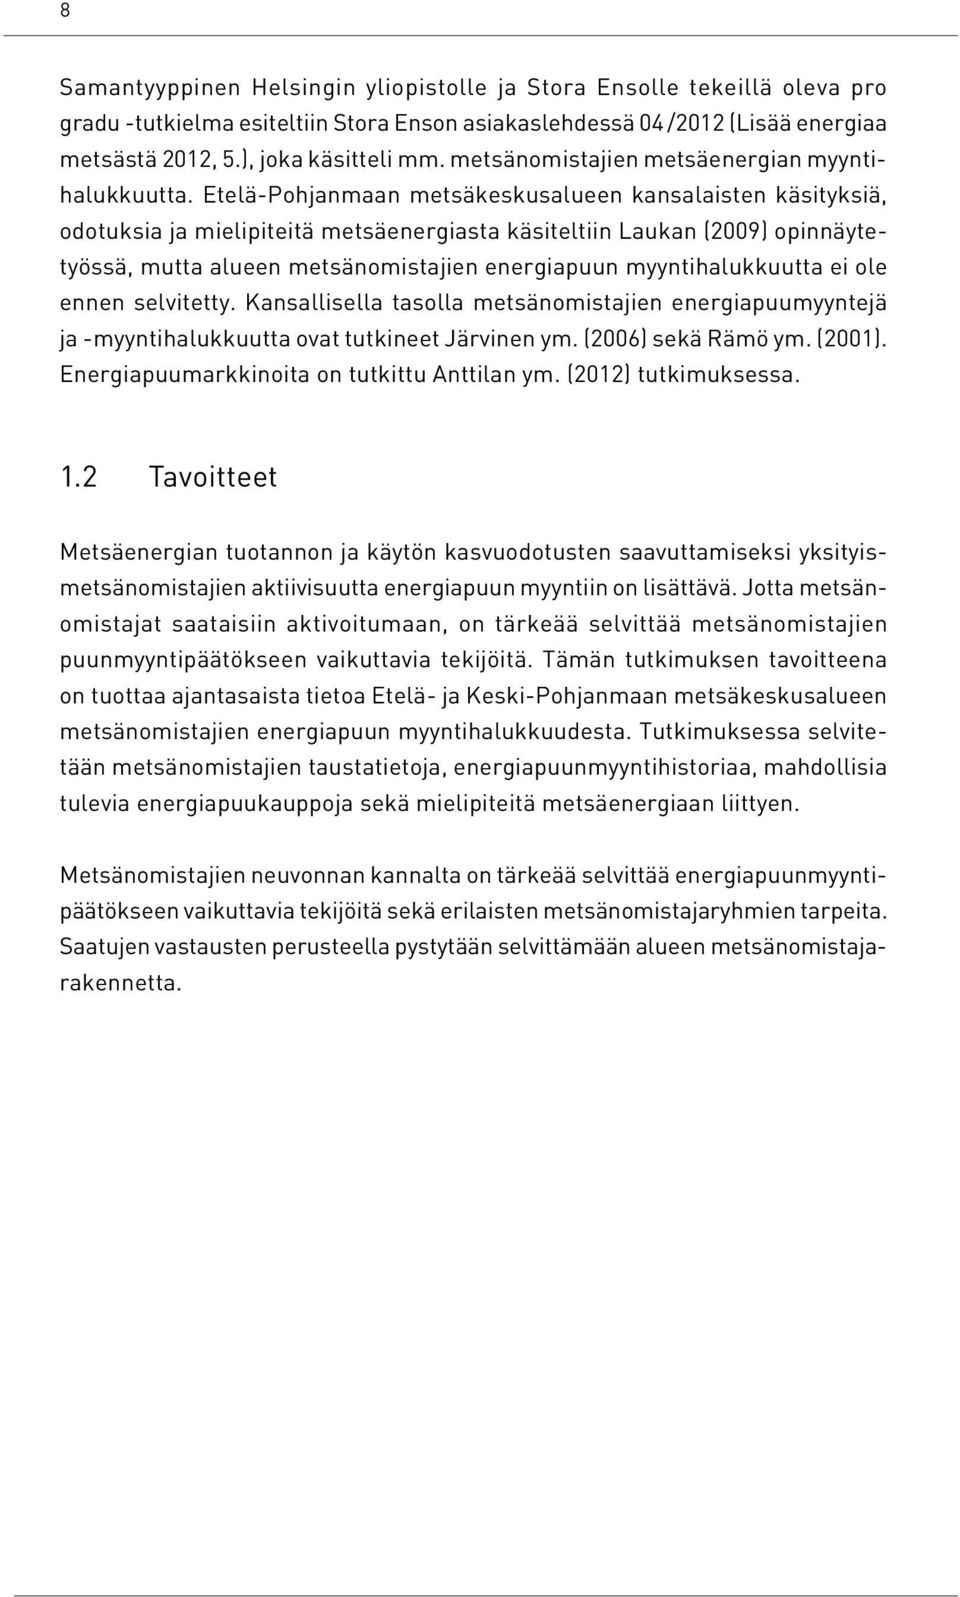 Etelä-Pohjanmaan metsäkeskusalueen kansalaisten käsityksiä, odotuksia ja mielipiteitä metsäenergiasta käsiteltiin Laukan (2009) opinnäytetyössä, mutta alueen metsänomistajien energiapuun